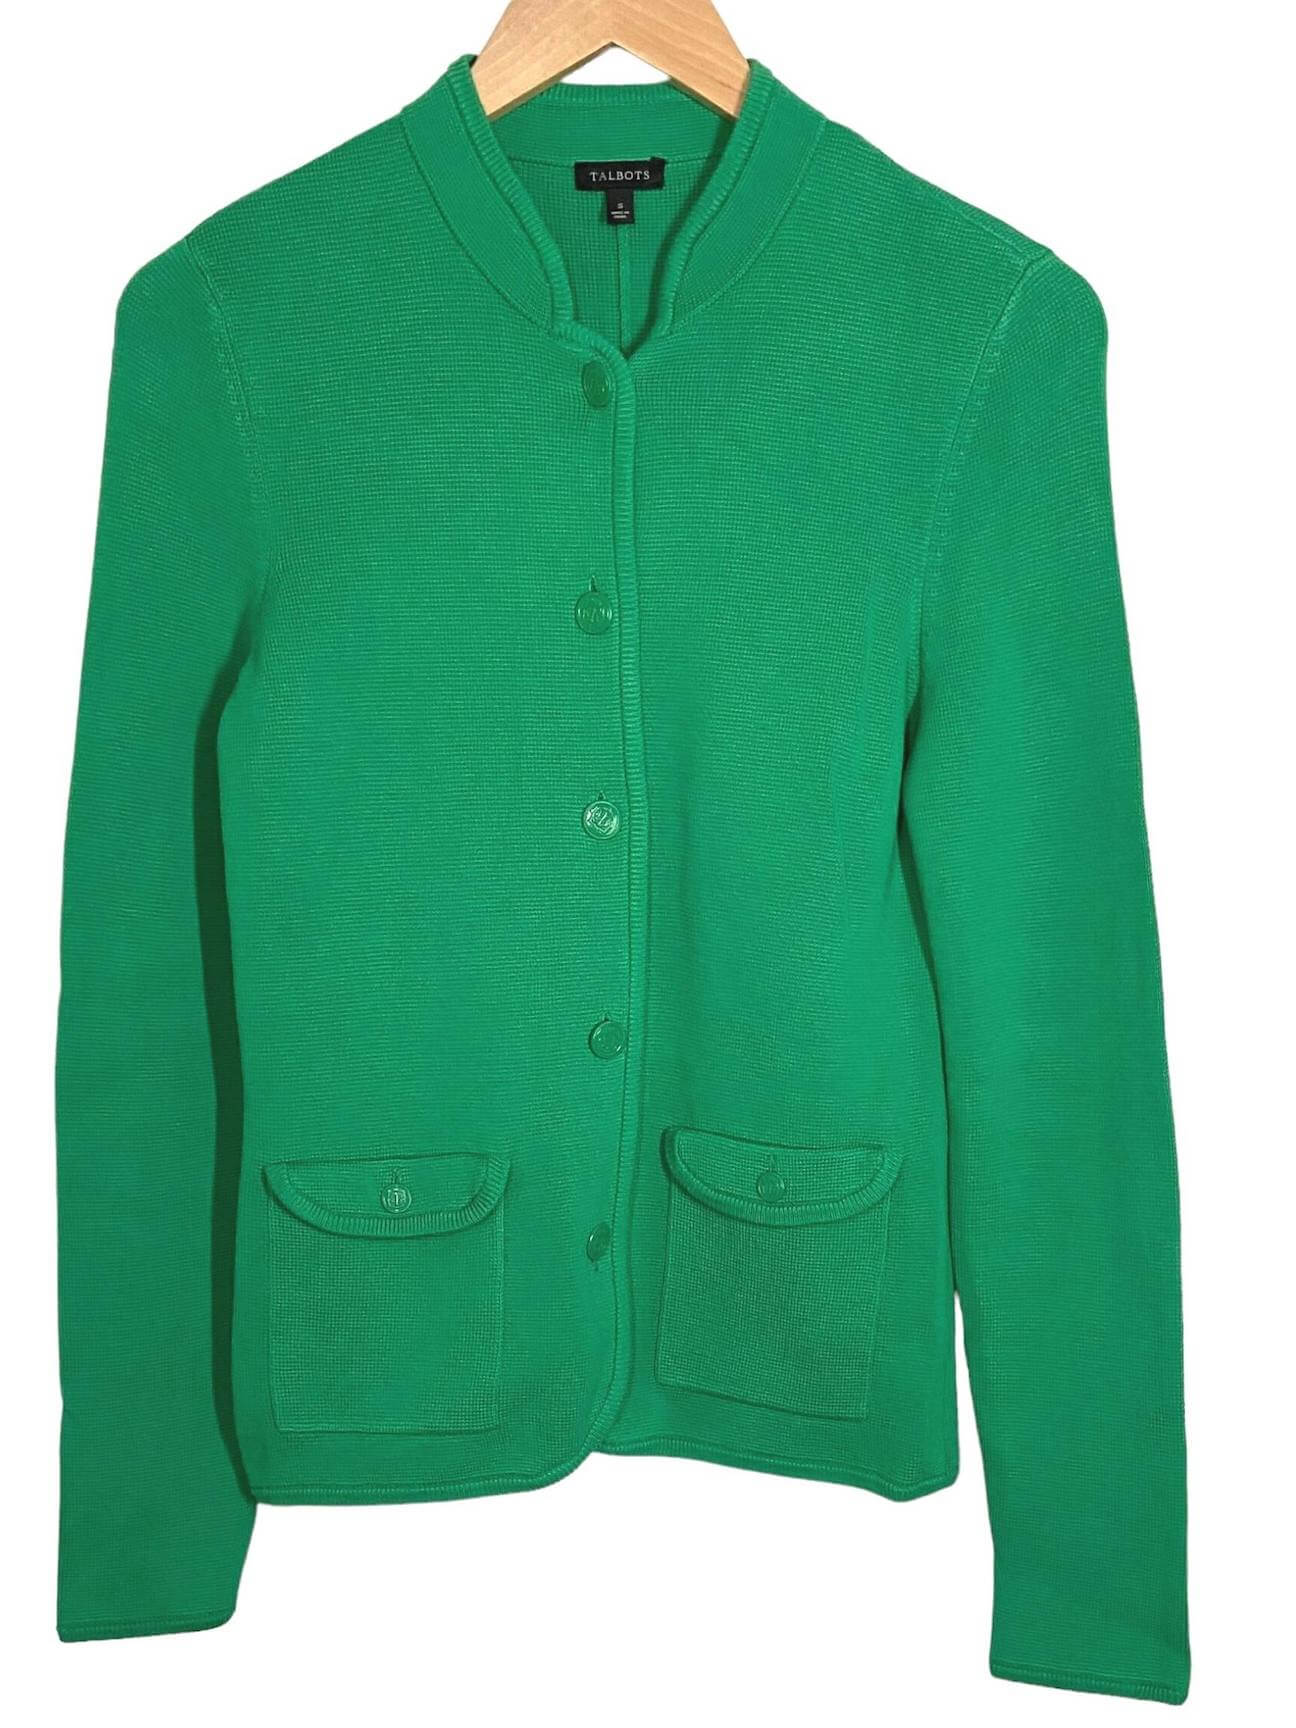 Light Spring TALBOTS parakeet green sweater jacket